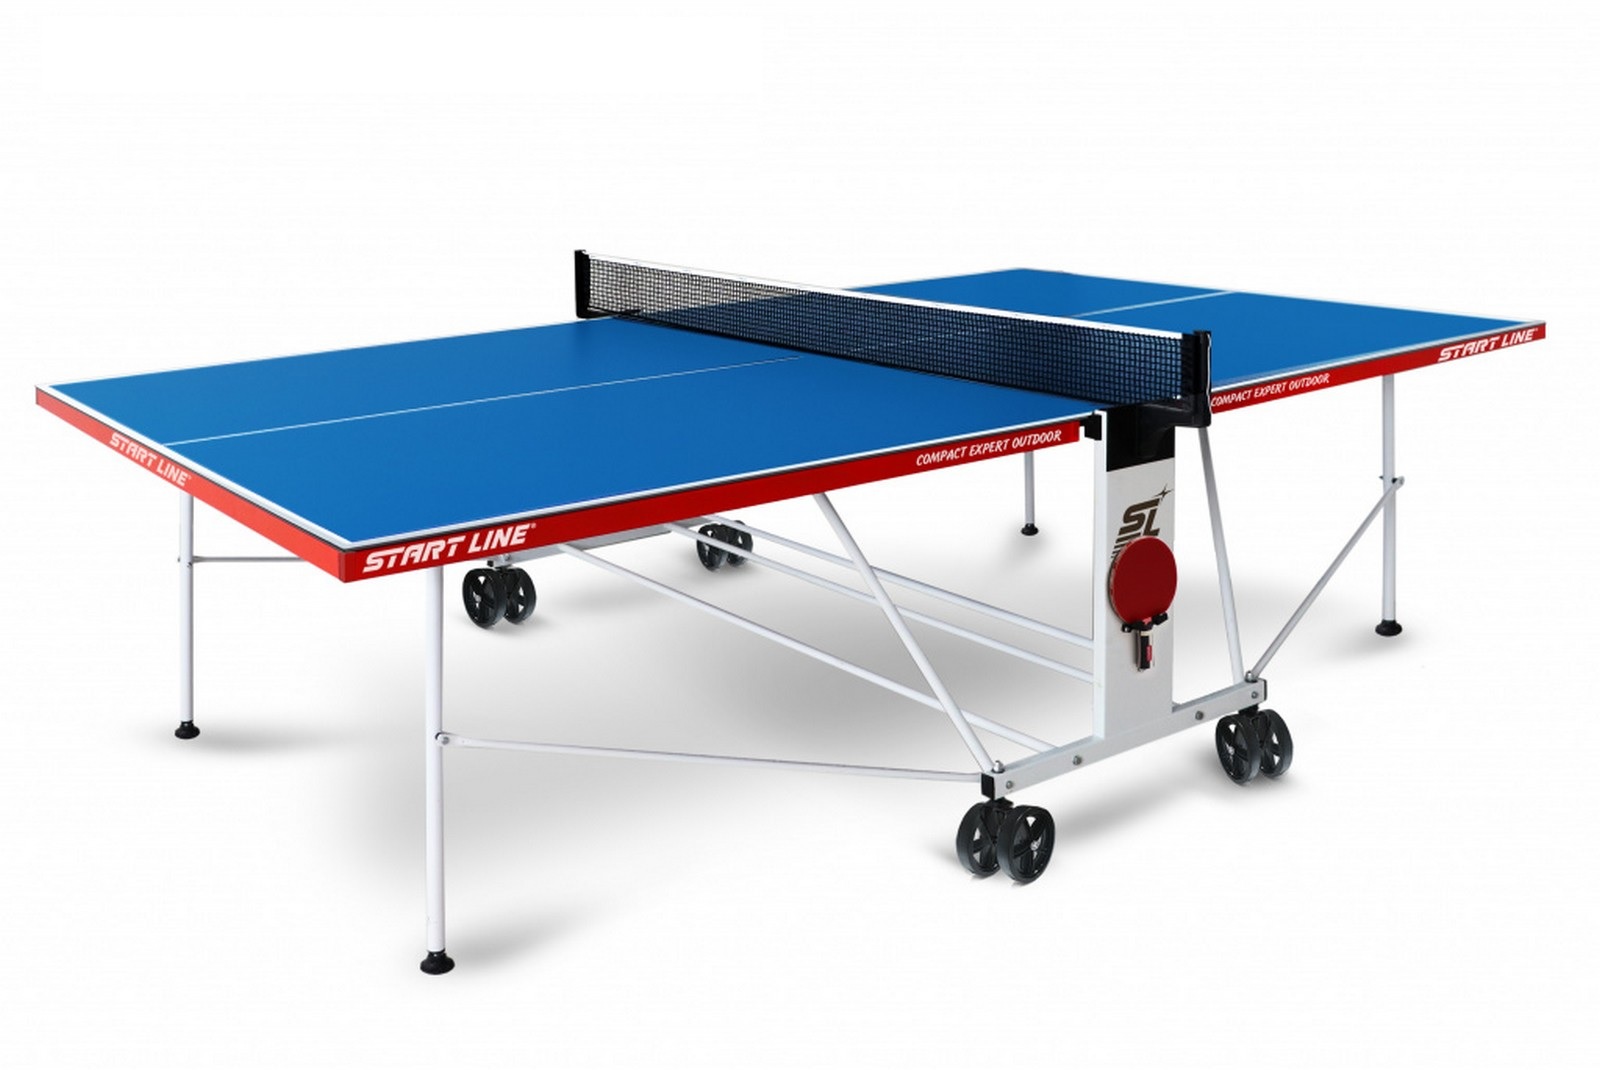 Купить Теннисный стол Start line Compact EXPERT Outdoor Blue, Line